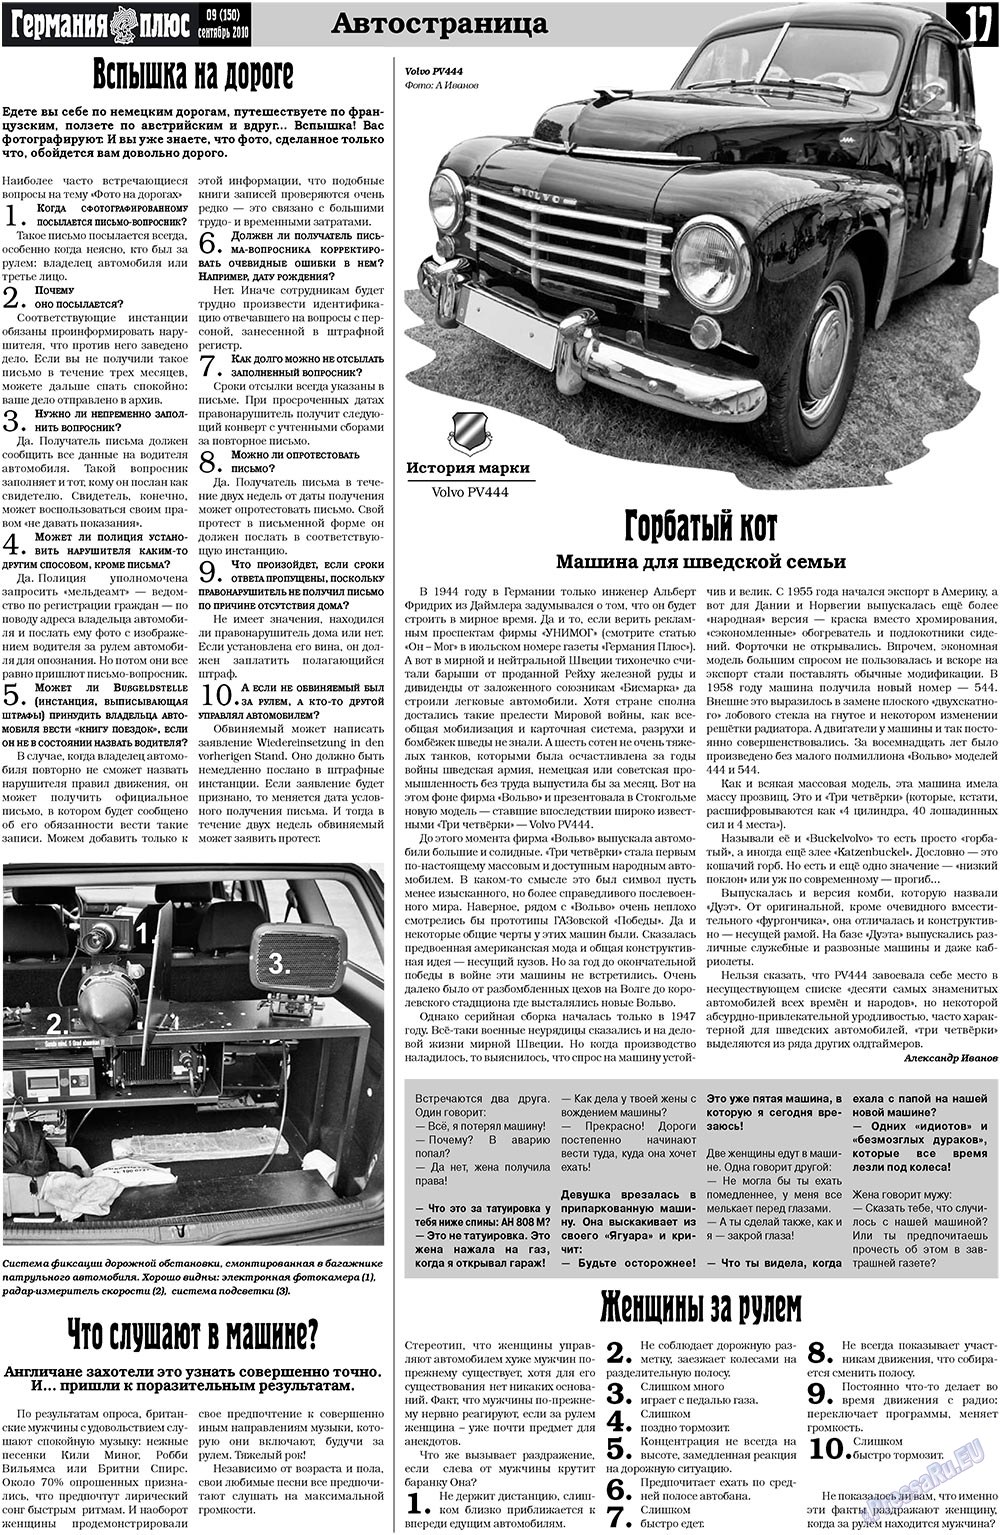 Германия плюс, газета. 2010 №9 стр.17